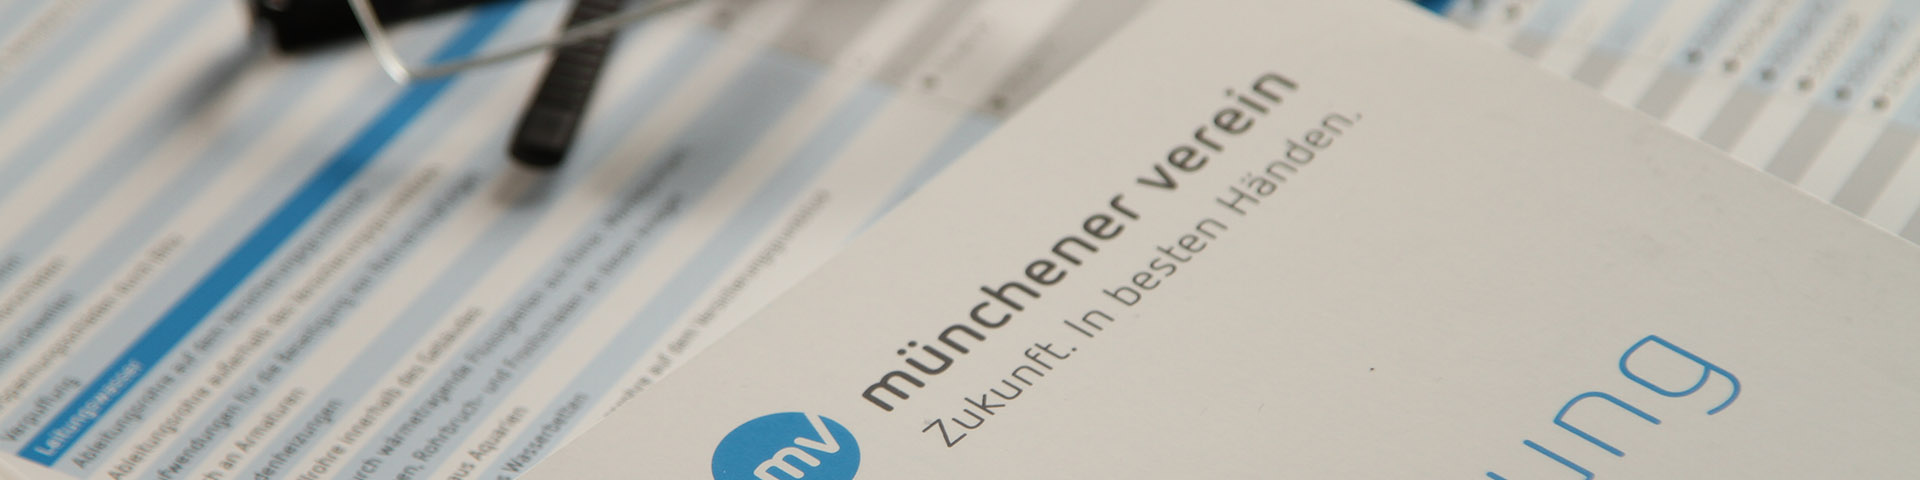 Produktinformationsblatt des Münchener Verein